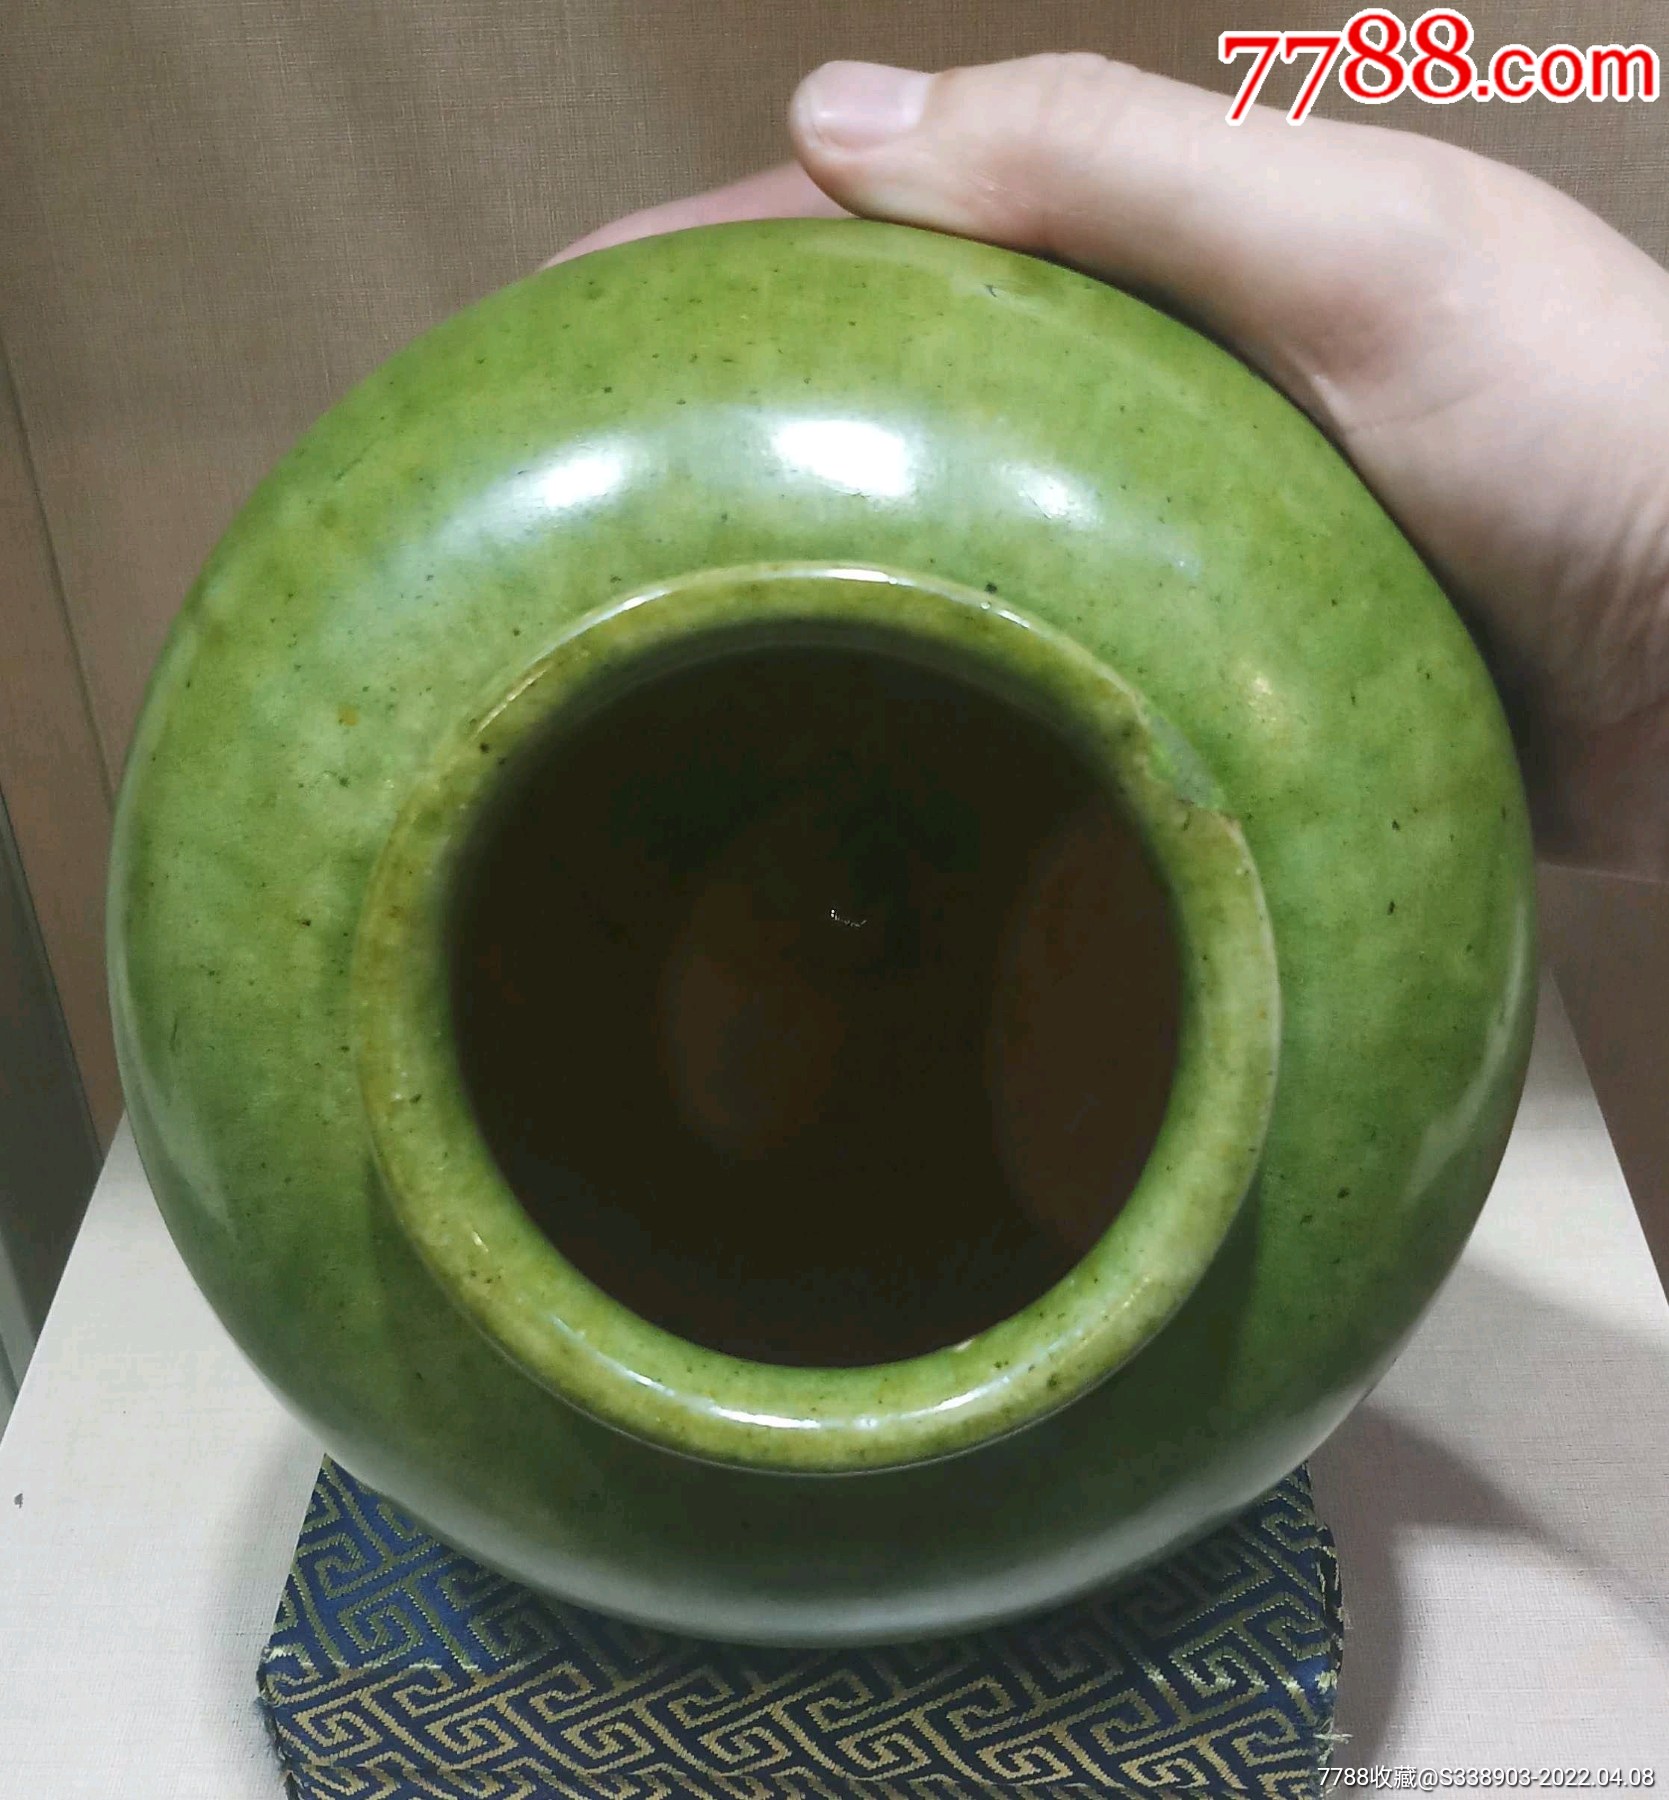 绿釉陶罐,完美品相,韵味十足,非常漂亮难得,造形古朴,收藏级简介:唐朝